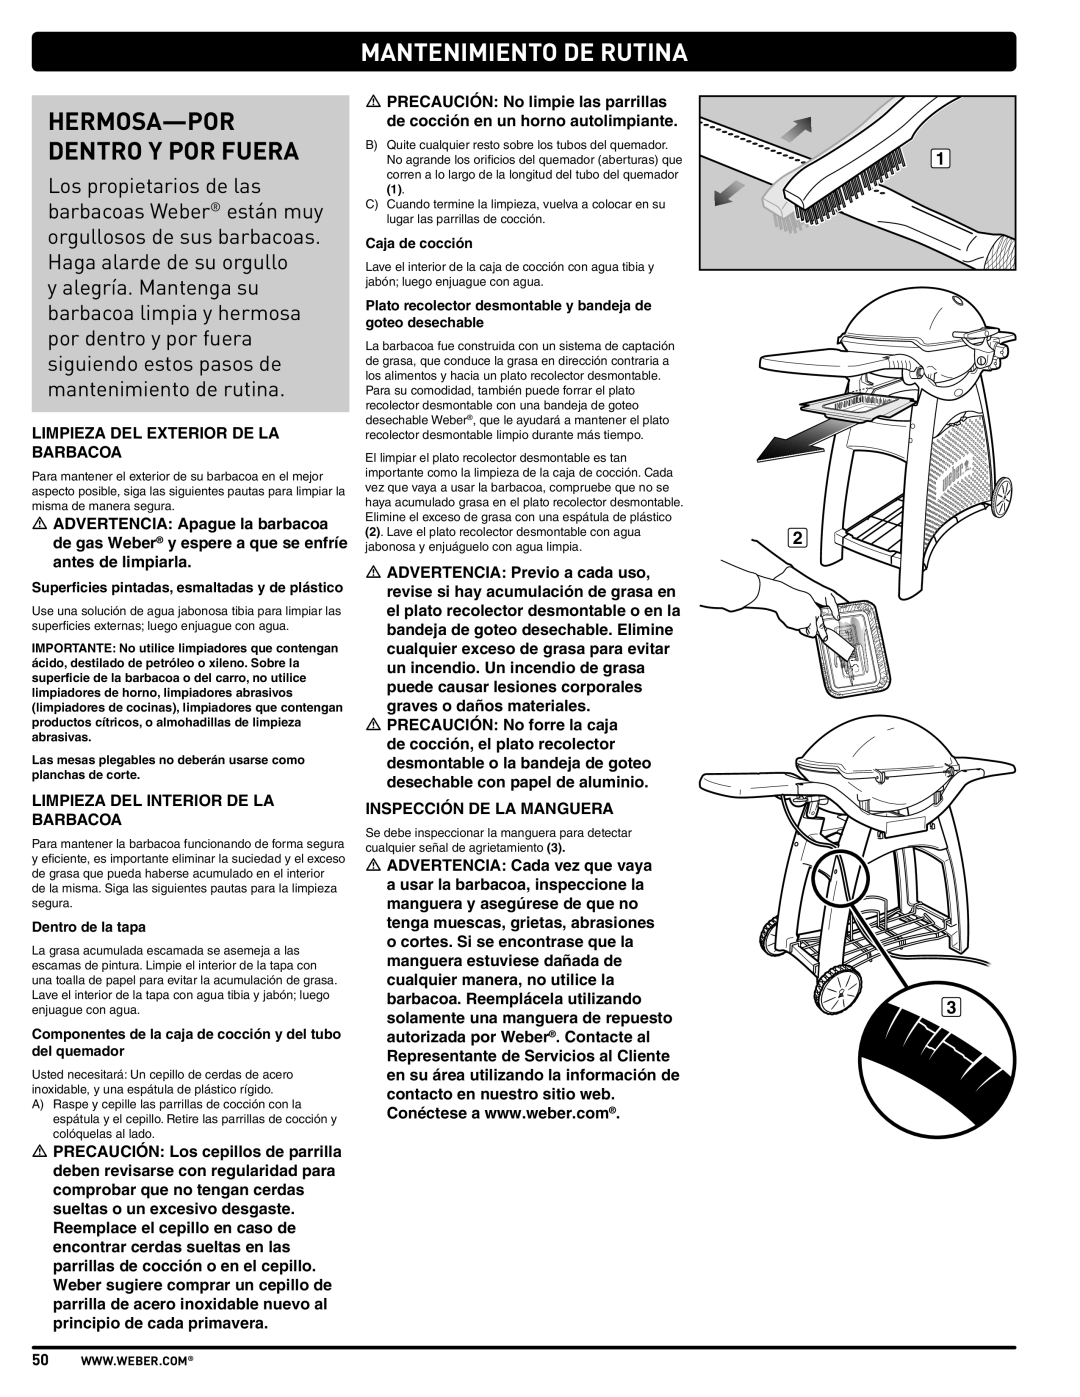 Weber 57515 manual Mantenimiento De Rutina, Hermosa-Por Dentro Y Por Fuera 